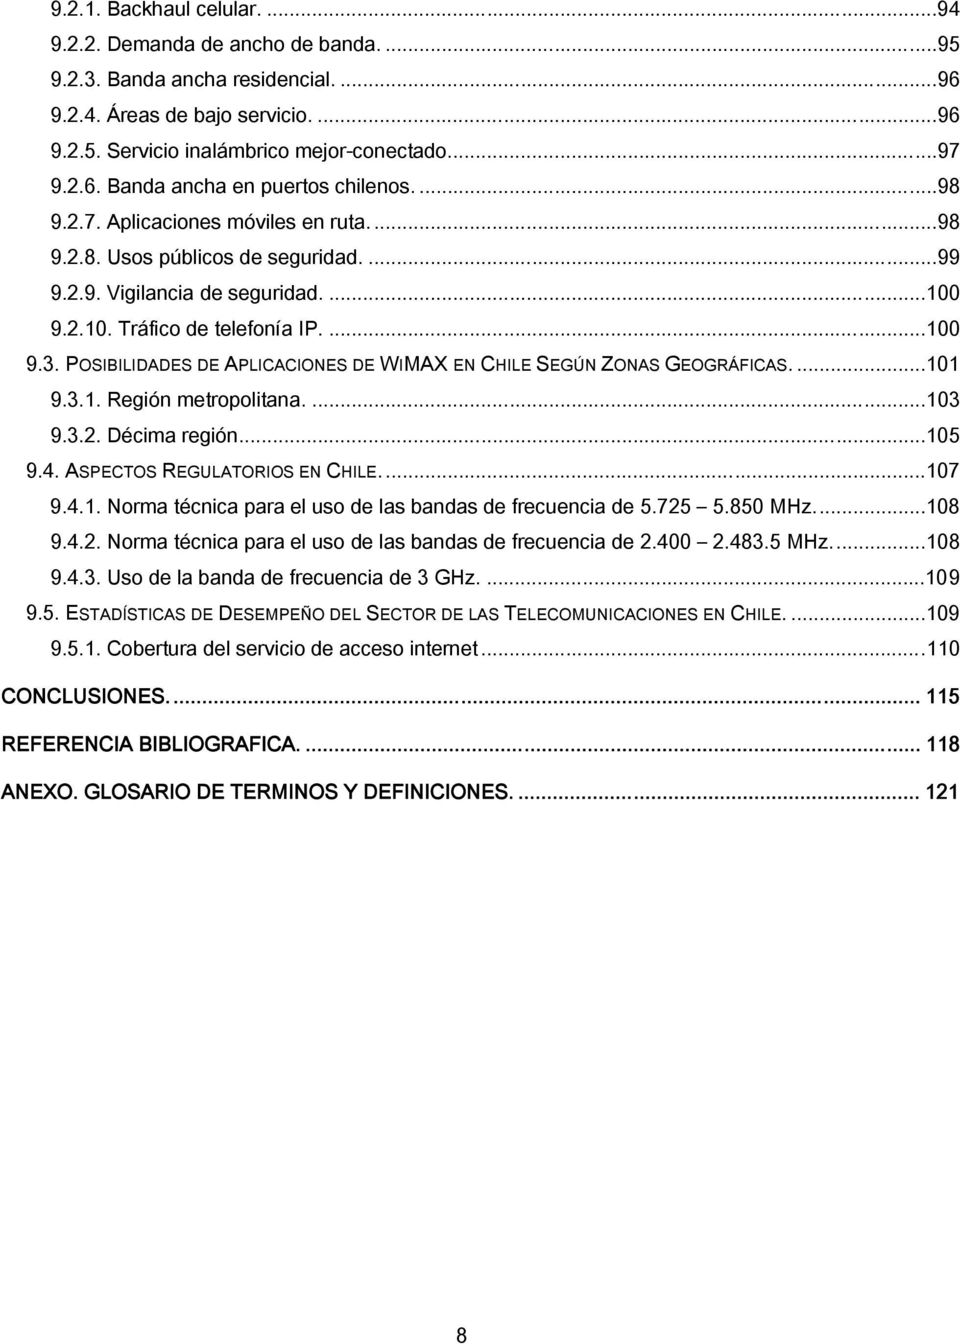 POSIBILIDADES DE APLICACIONES DE WIMAX EN CHILE SEGÚN ZONAS GEOGRÁFICAS....101 9.3.1. Región metropolitana....103 9.3.2. Décima región...105 9.4. ASPECTOS REGULATORIOS EN CHILE...107 9.4.1. Norma técnica para el uso de las bandas de frecuencia de 5.